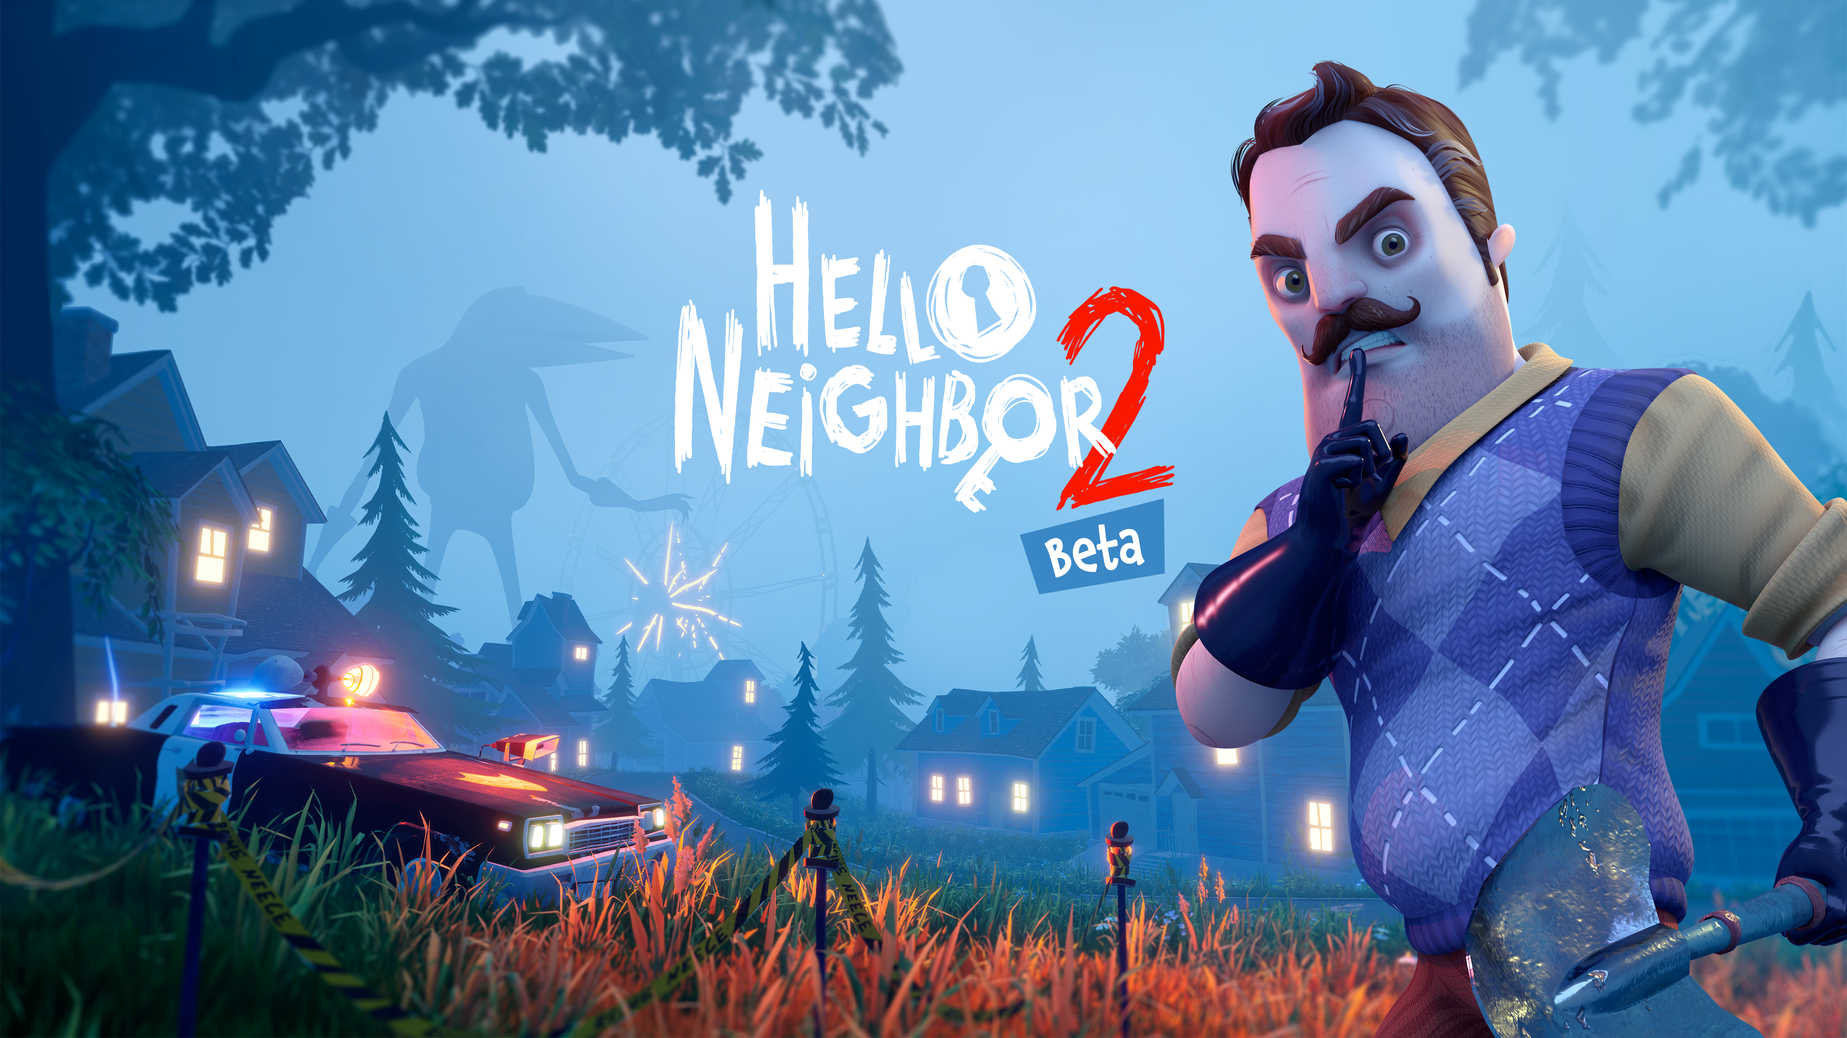 Secret Neighbor Beta Trailer - Starts Aug 2, film trailer, house